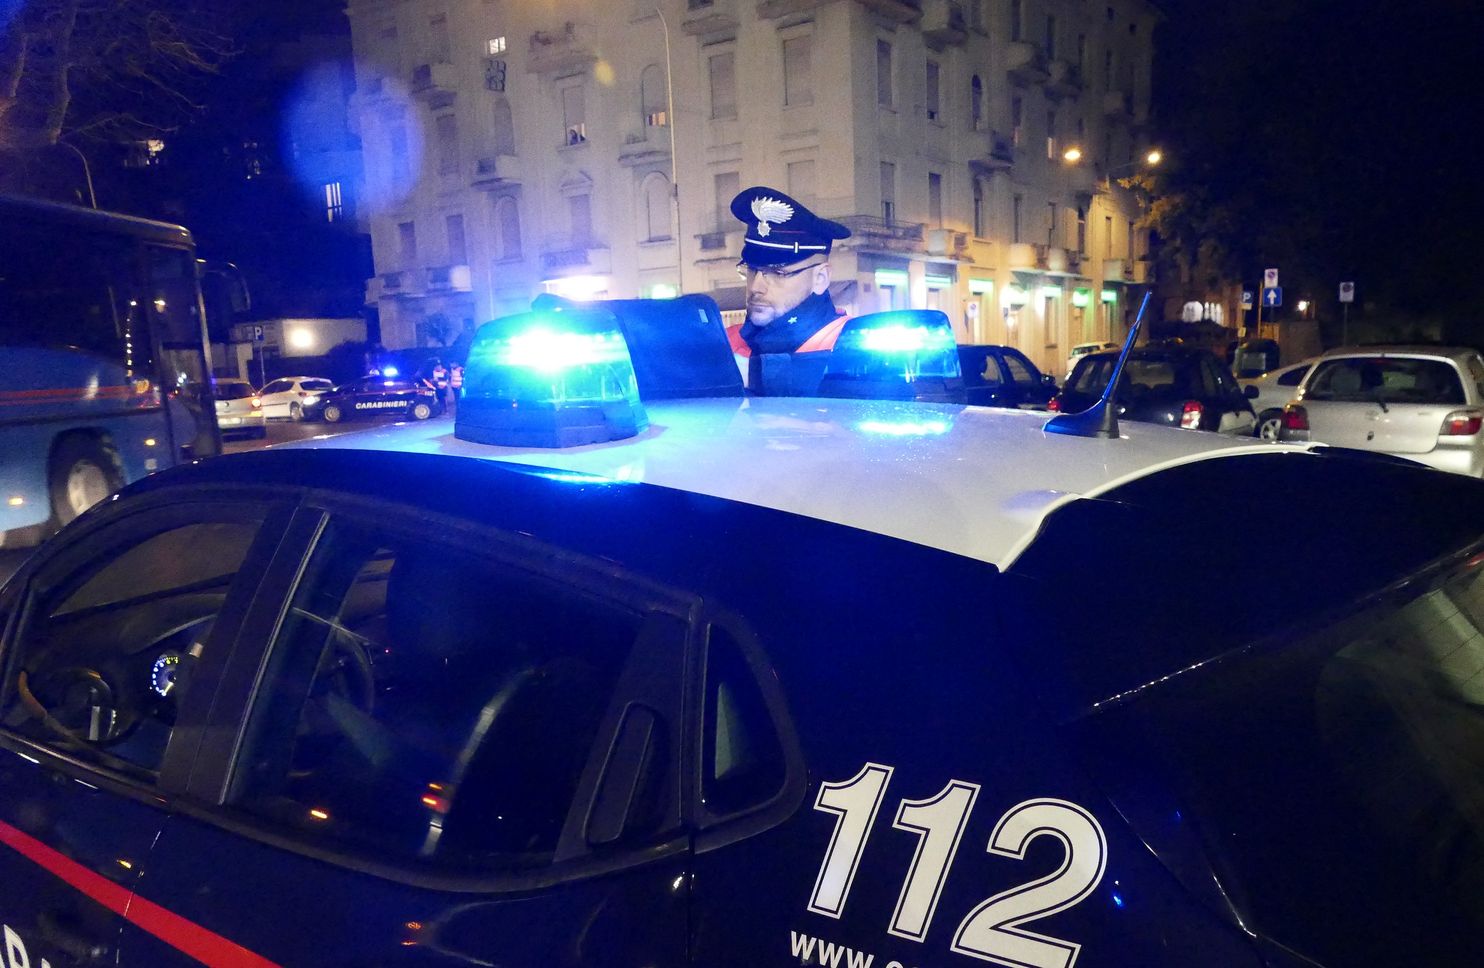 Lite tra giovani al pontile, carabinieri identificano i responsabili, denunciati 6 giovani tra cui un minore